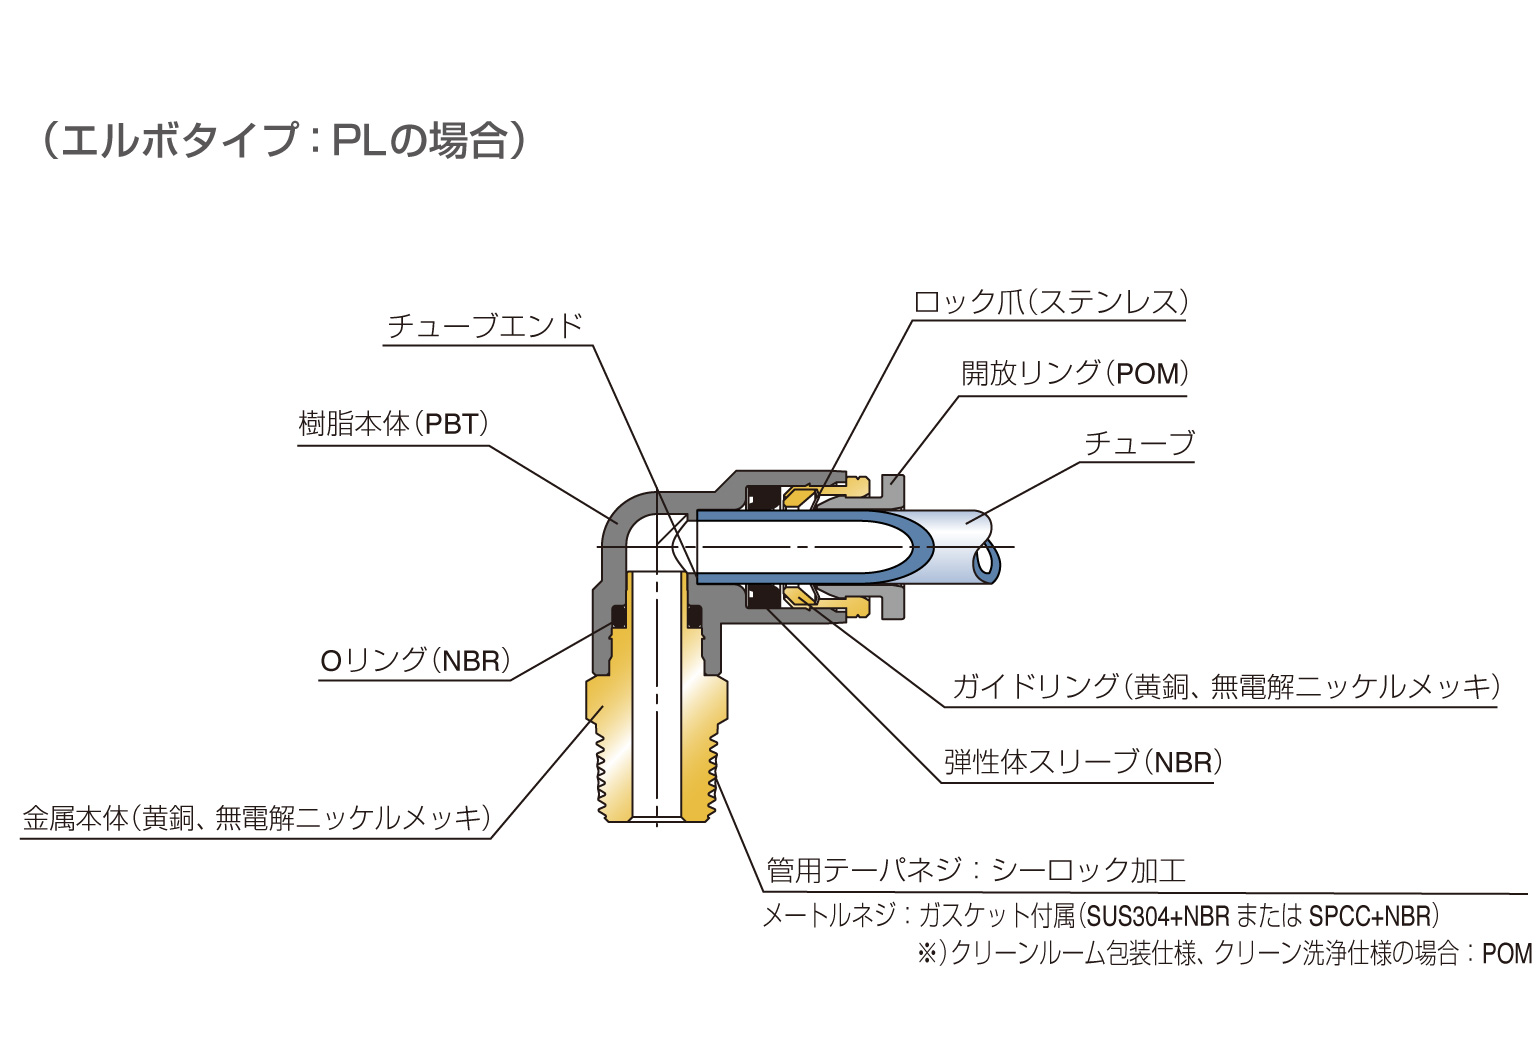 チューブフィッティング | PISCO 空気圧機器メーカー 日本ピスコ